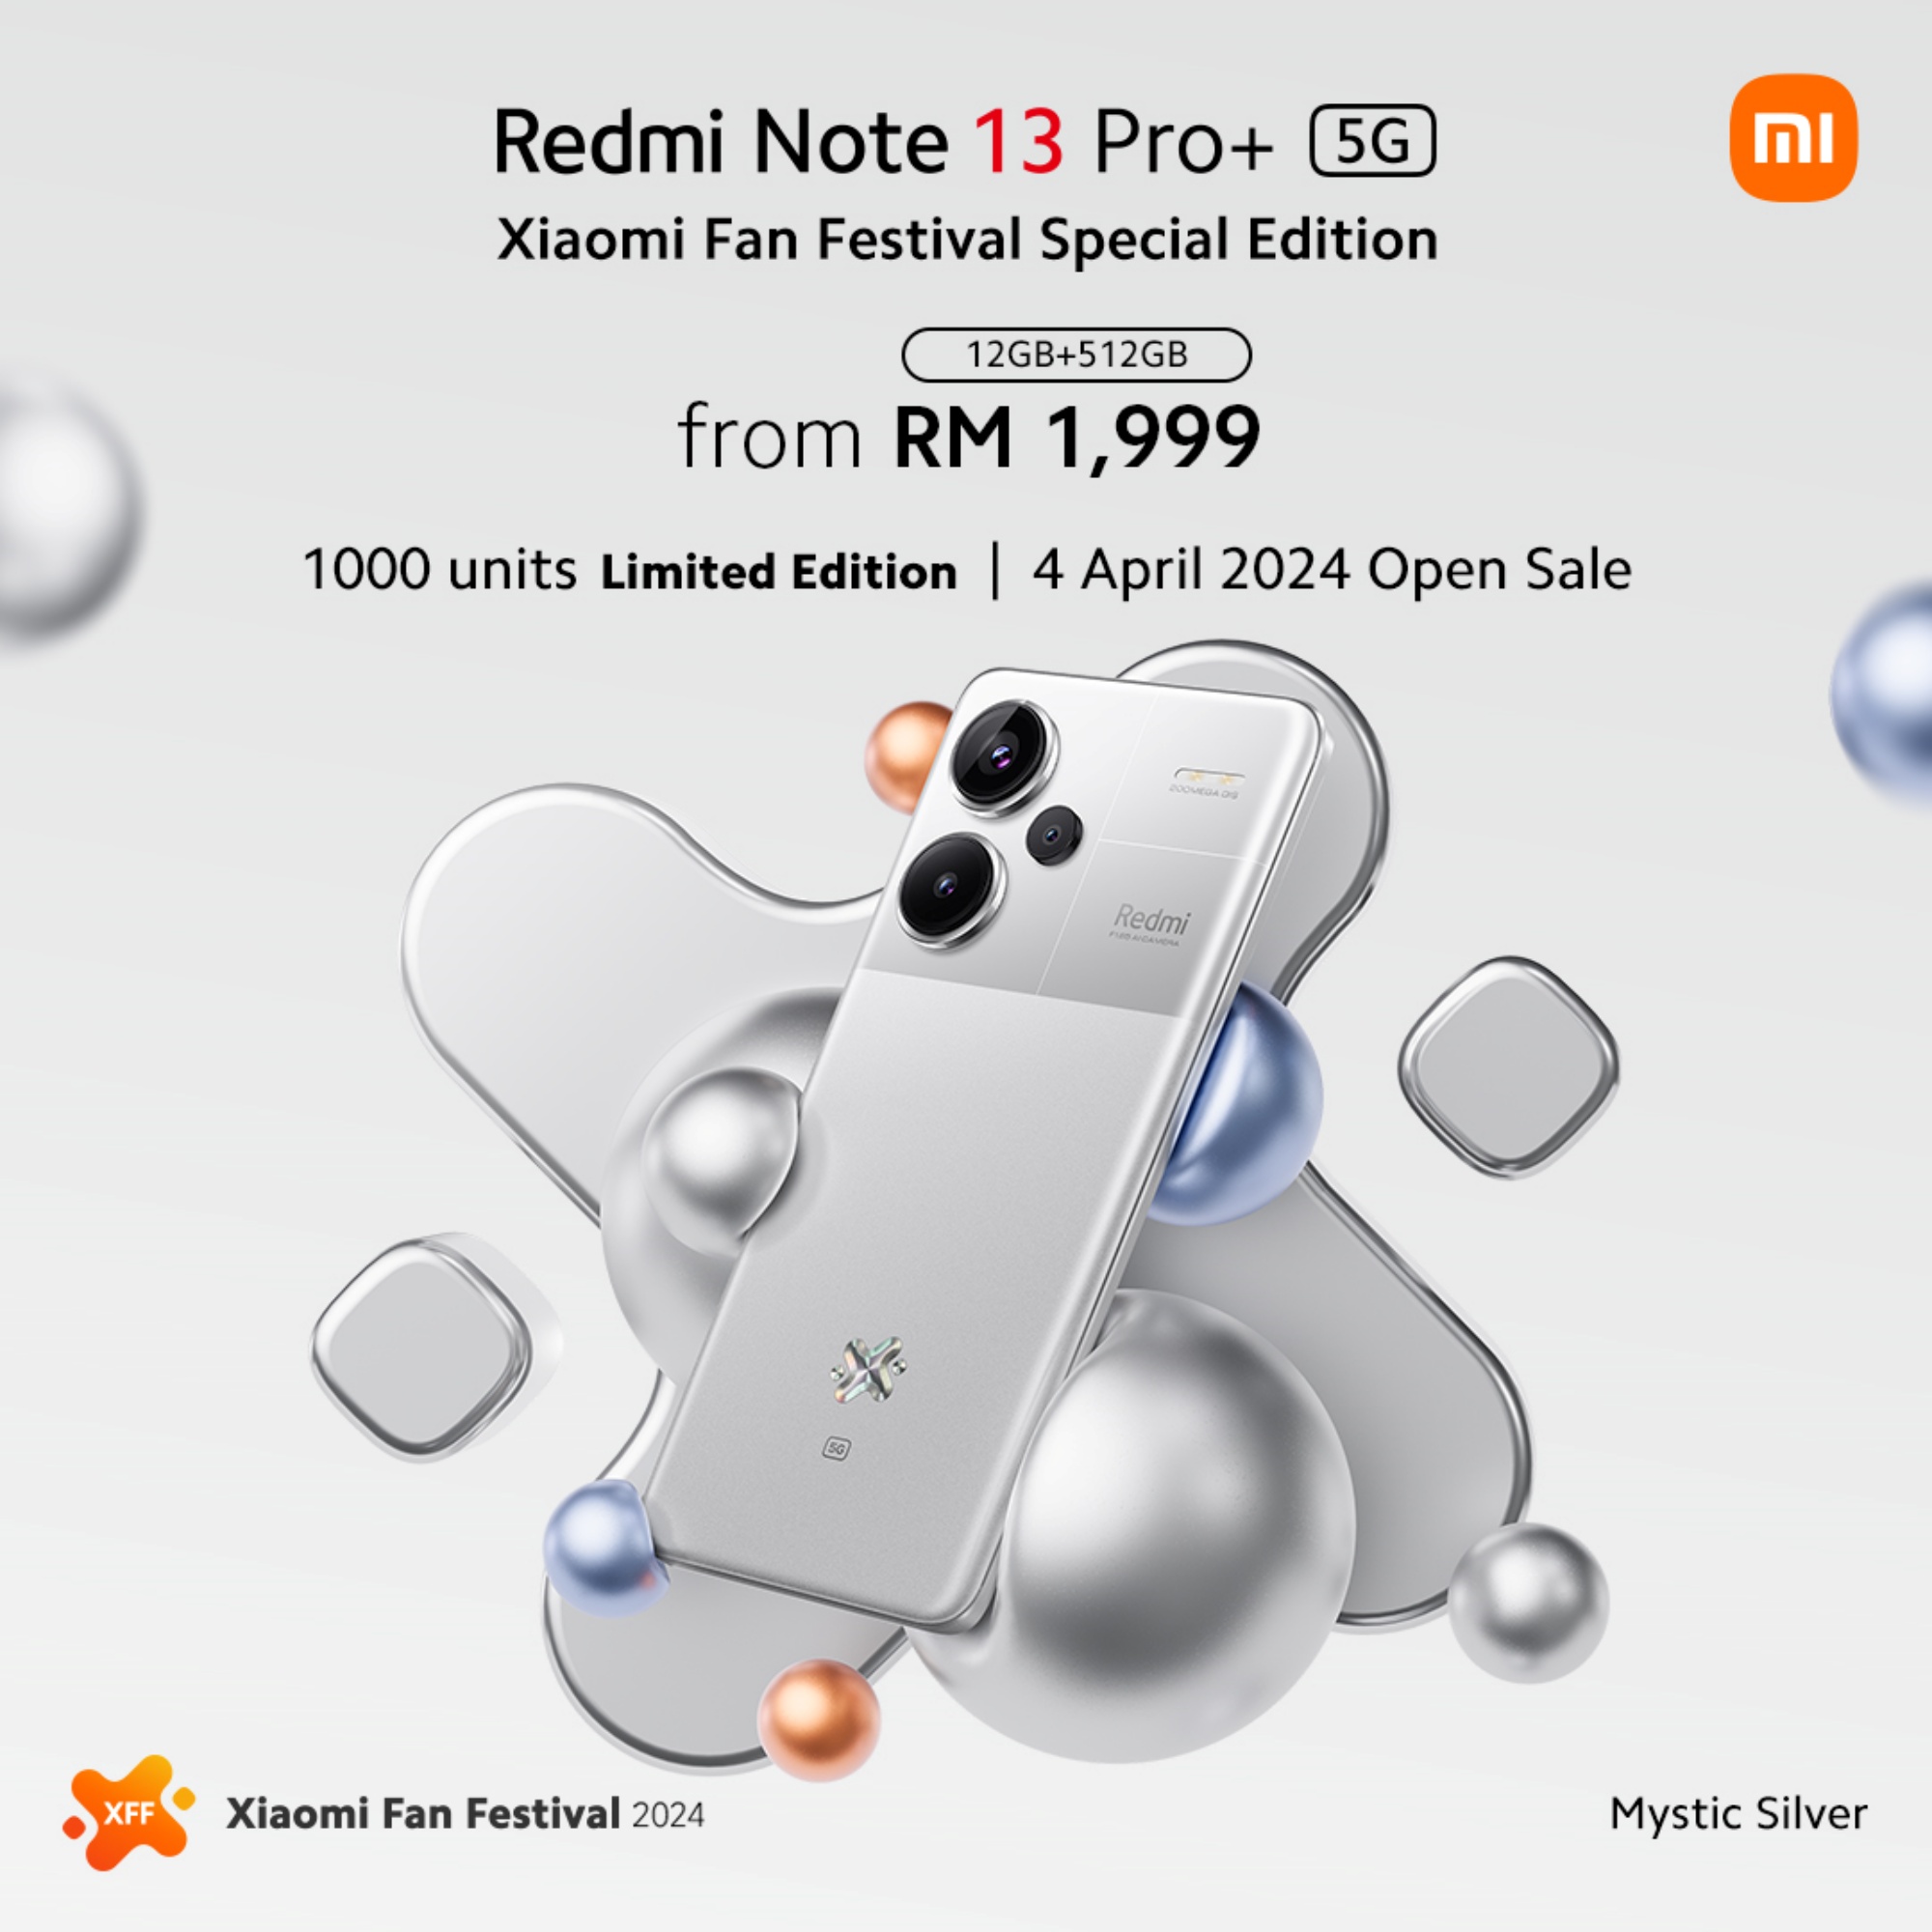 xiaomi_Xiaomi Redmi Note 13 Pro Plus 5G XFF Edition